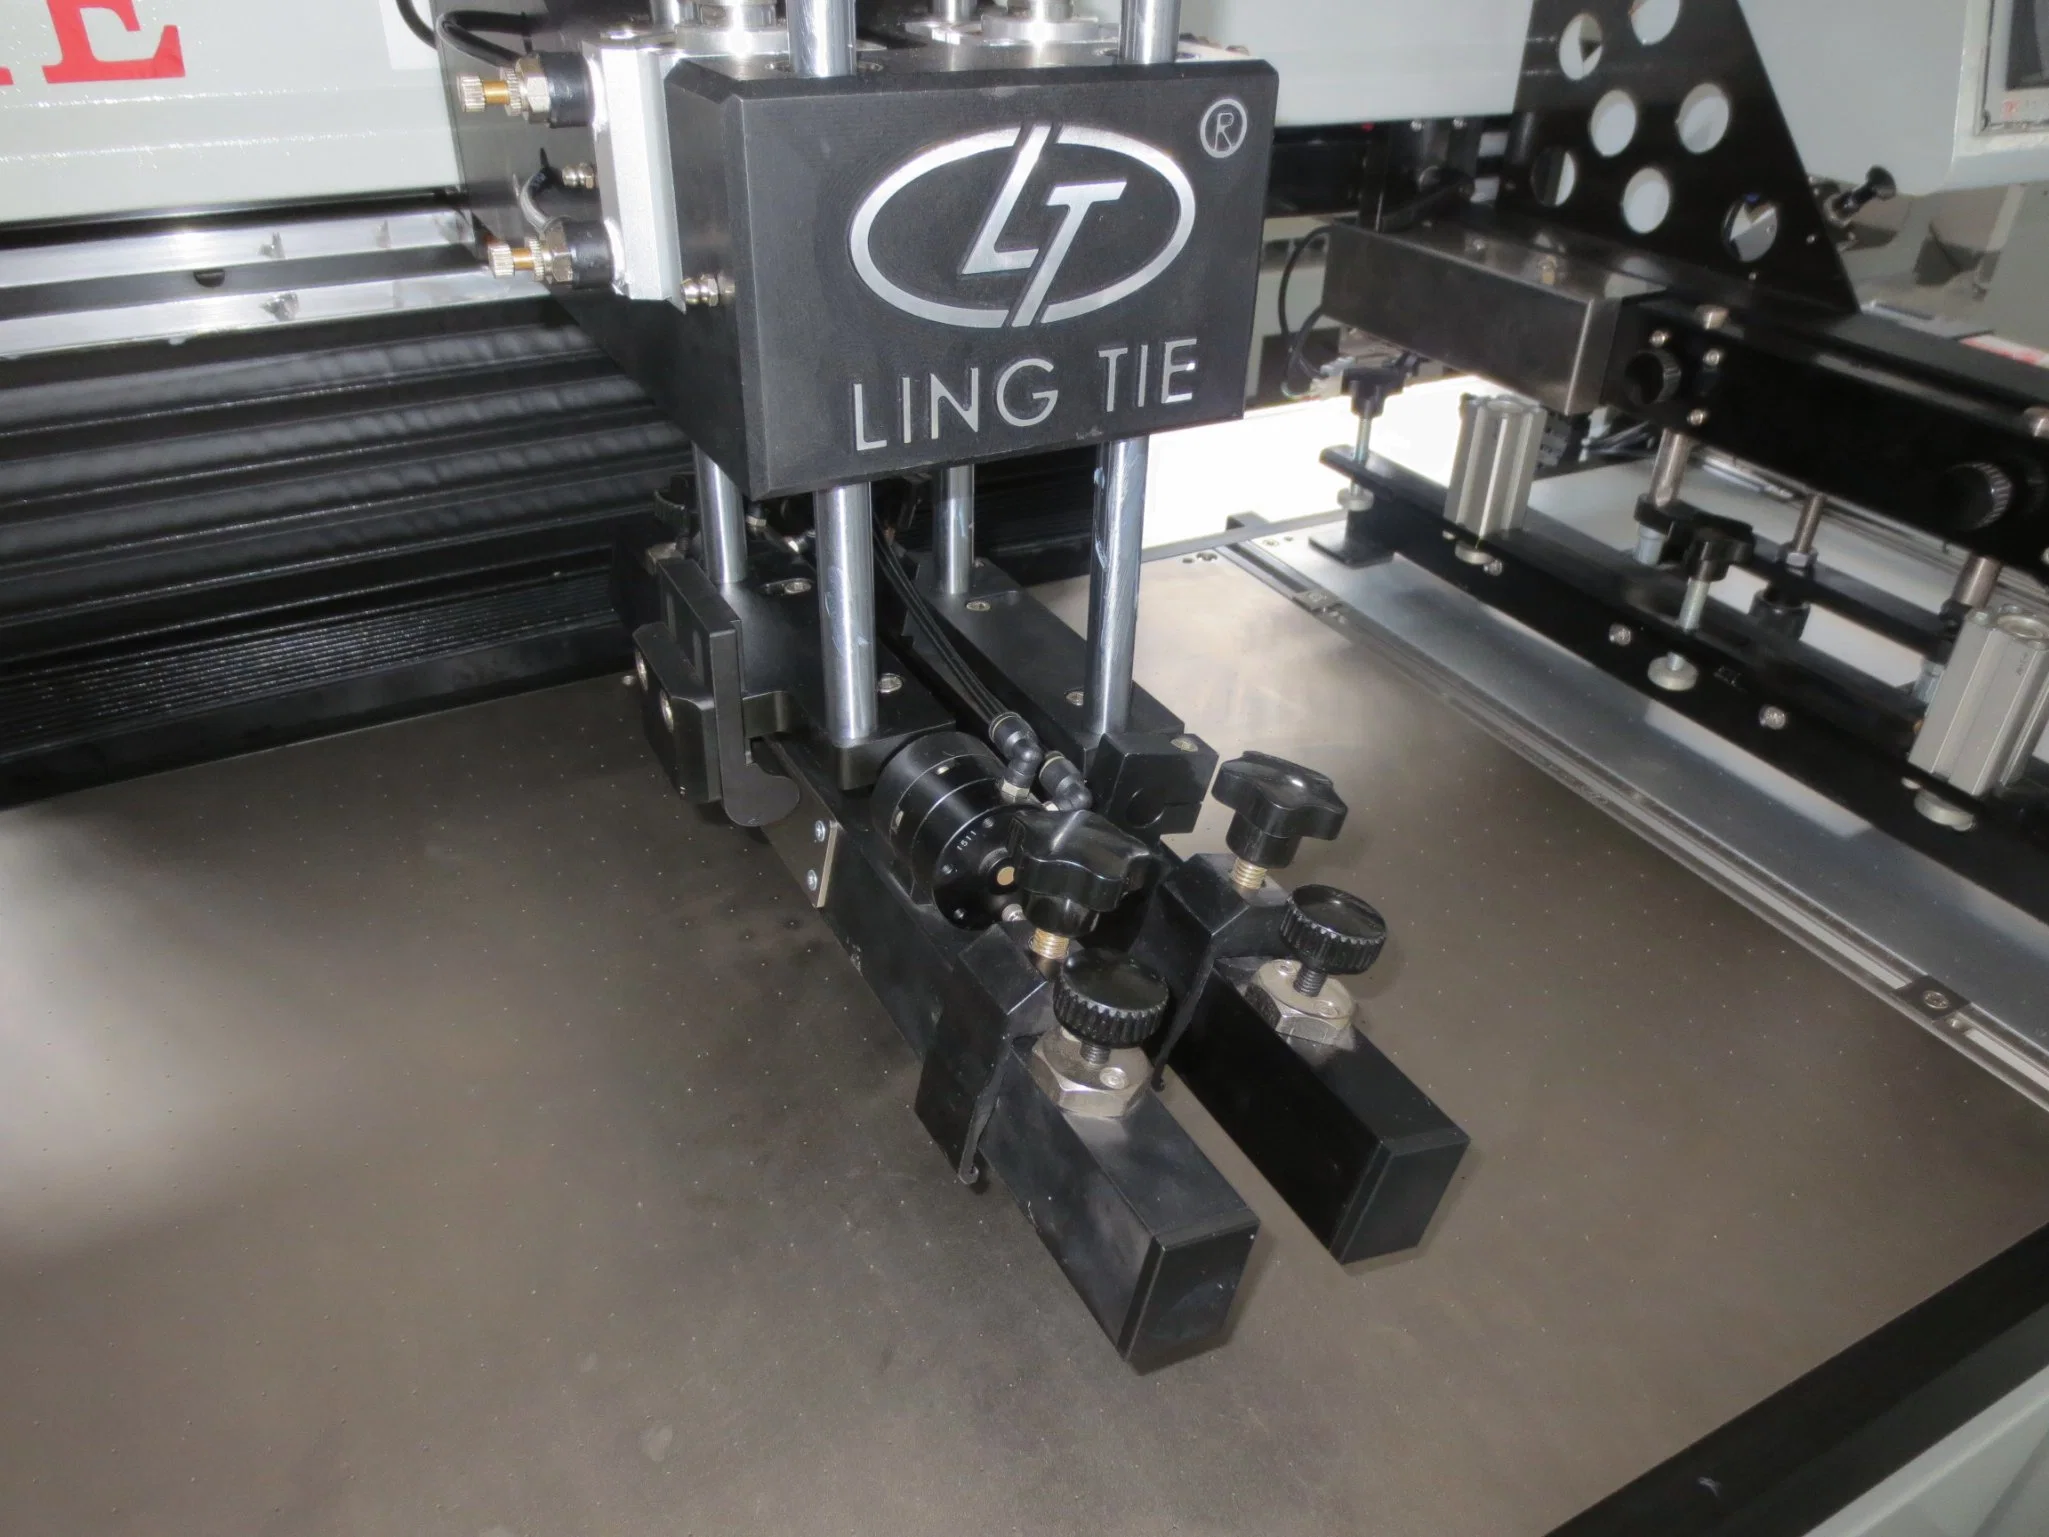 Automatische Gewebeband Rolle zu Rolle Siebdrucker Textiletikett Siebdruckmaschine